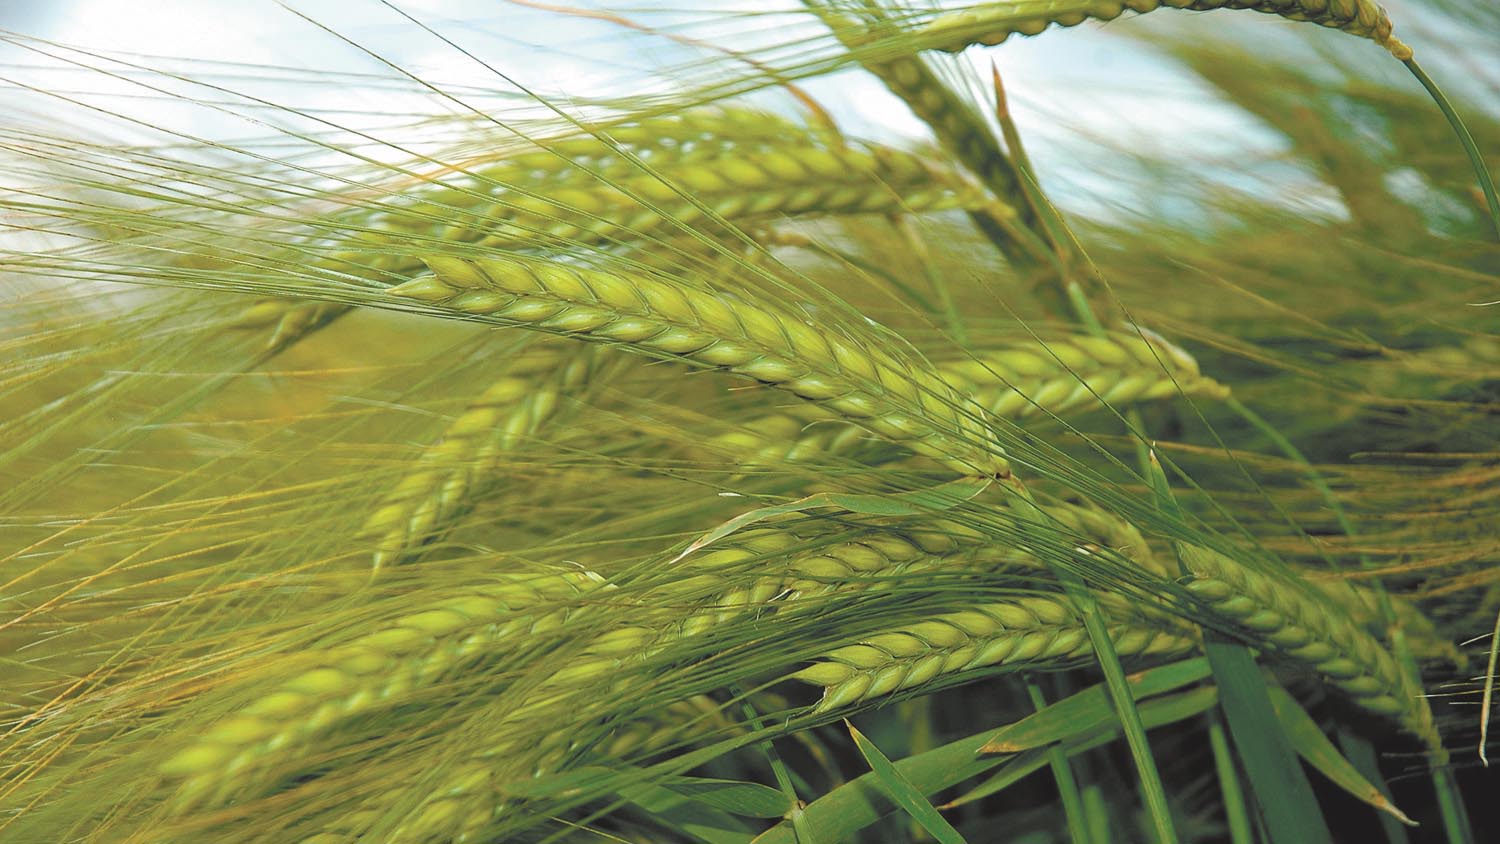 Winter barley begins 2016 Harvest Results